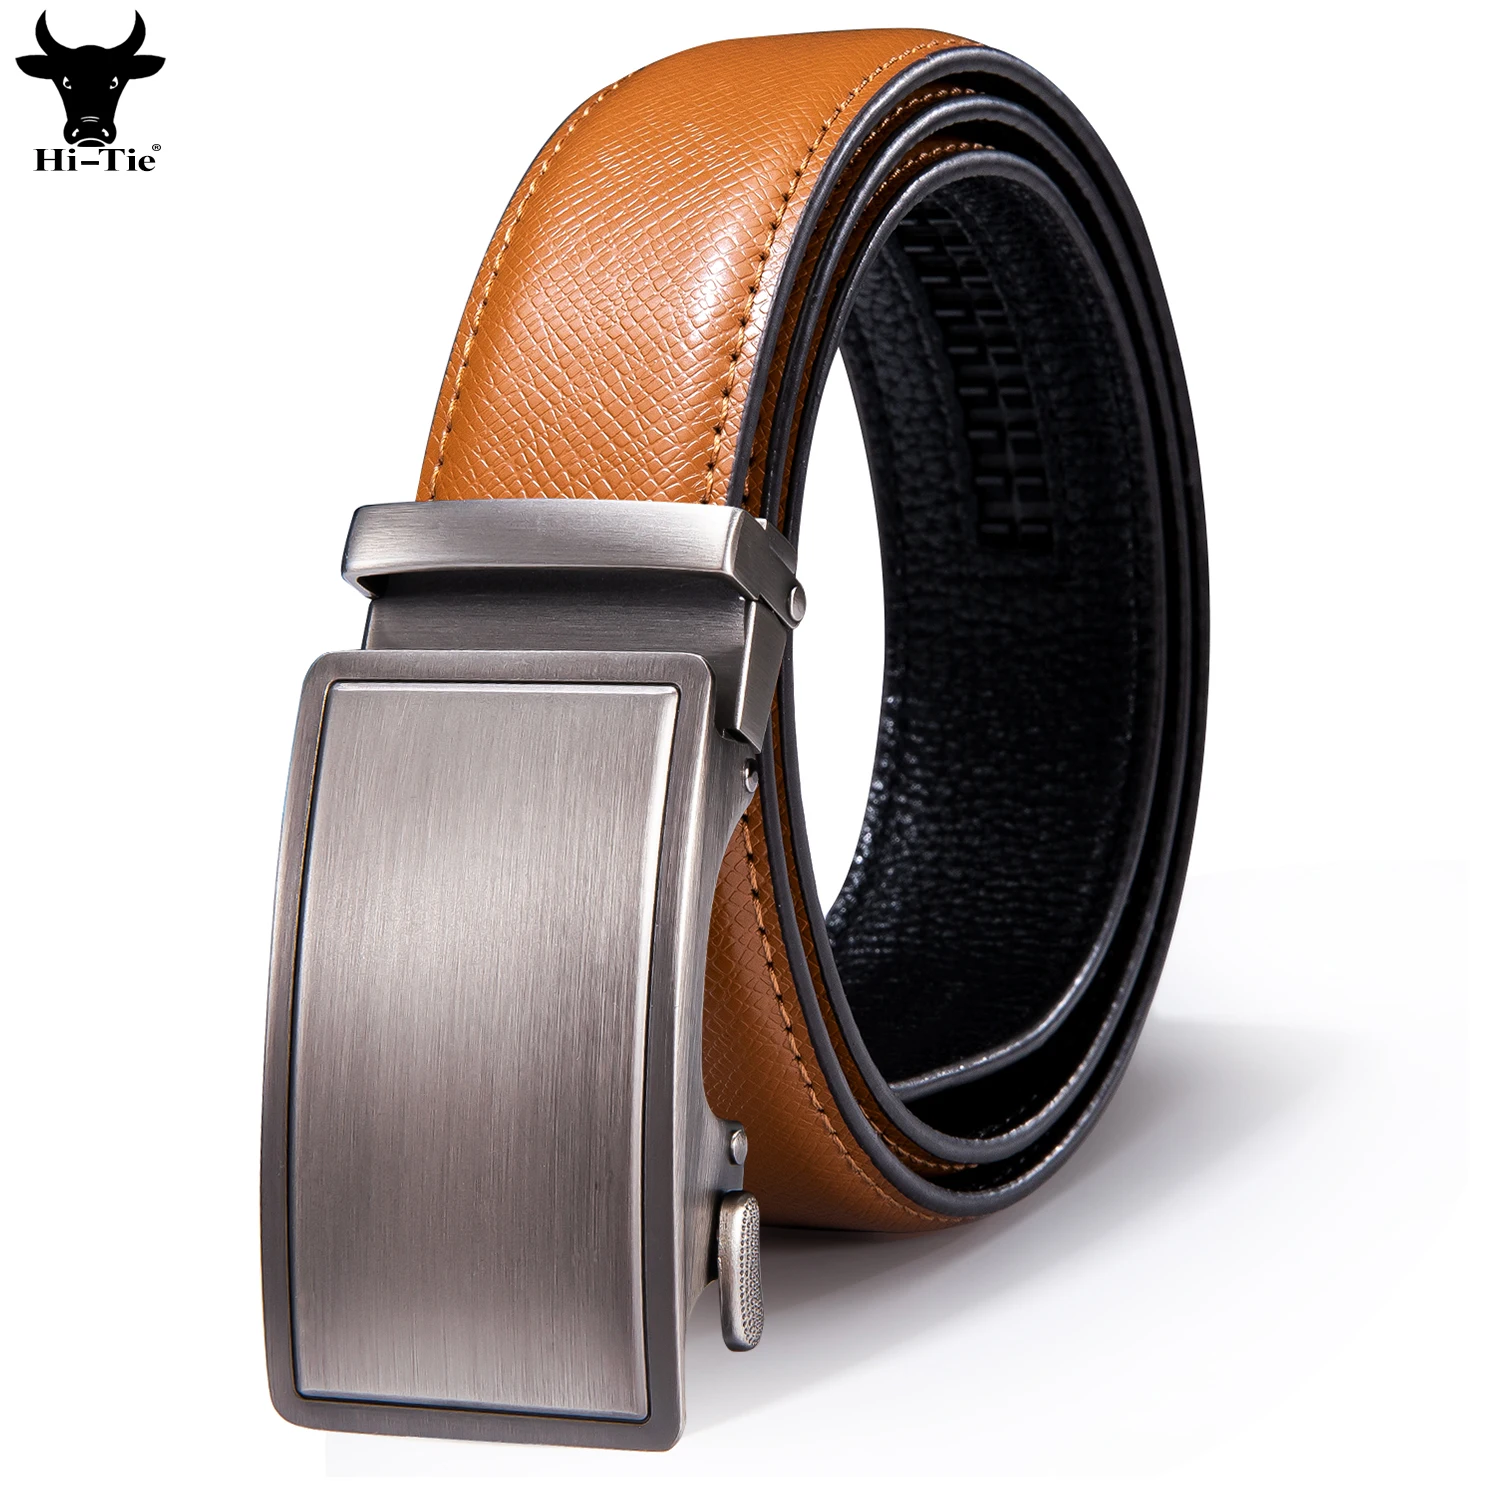 Hi-Tie Designer Mens Belts Orange Genuine Leather Silver Solid Automatic Buckles Ratchet Waist Belt for Men Dress Jeans Wedding